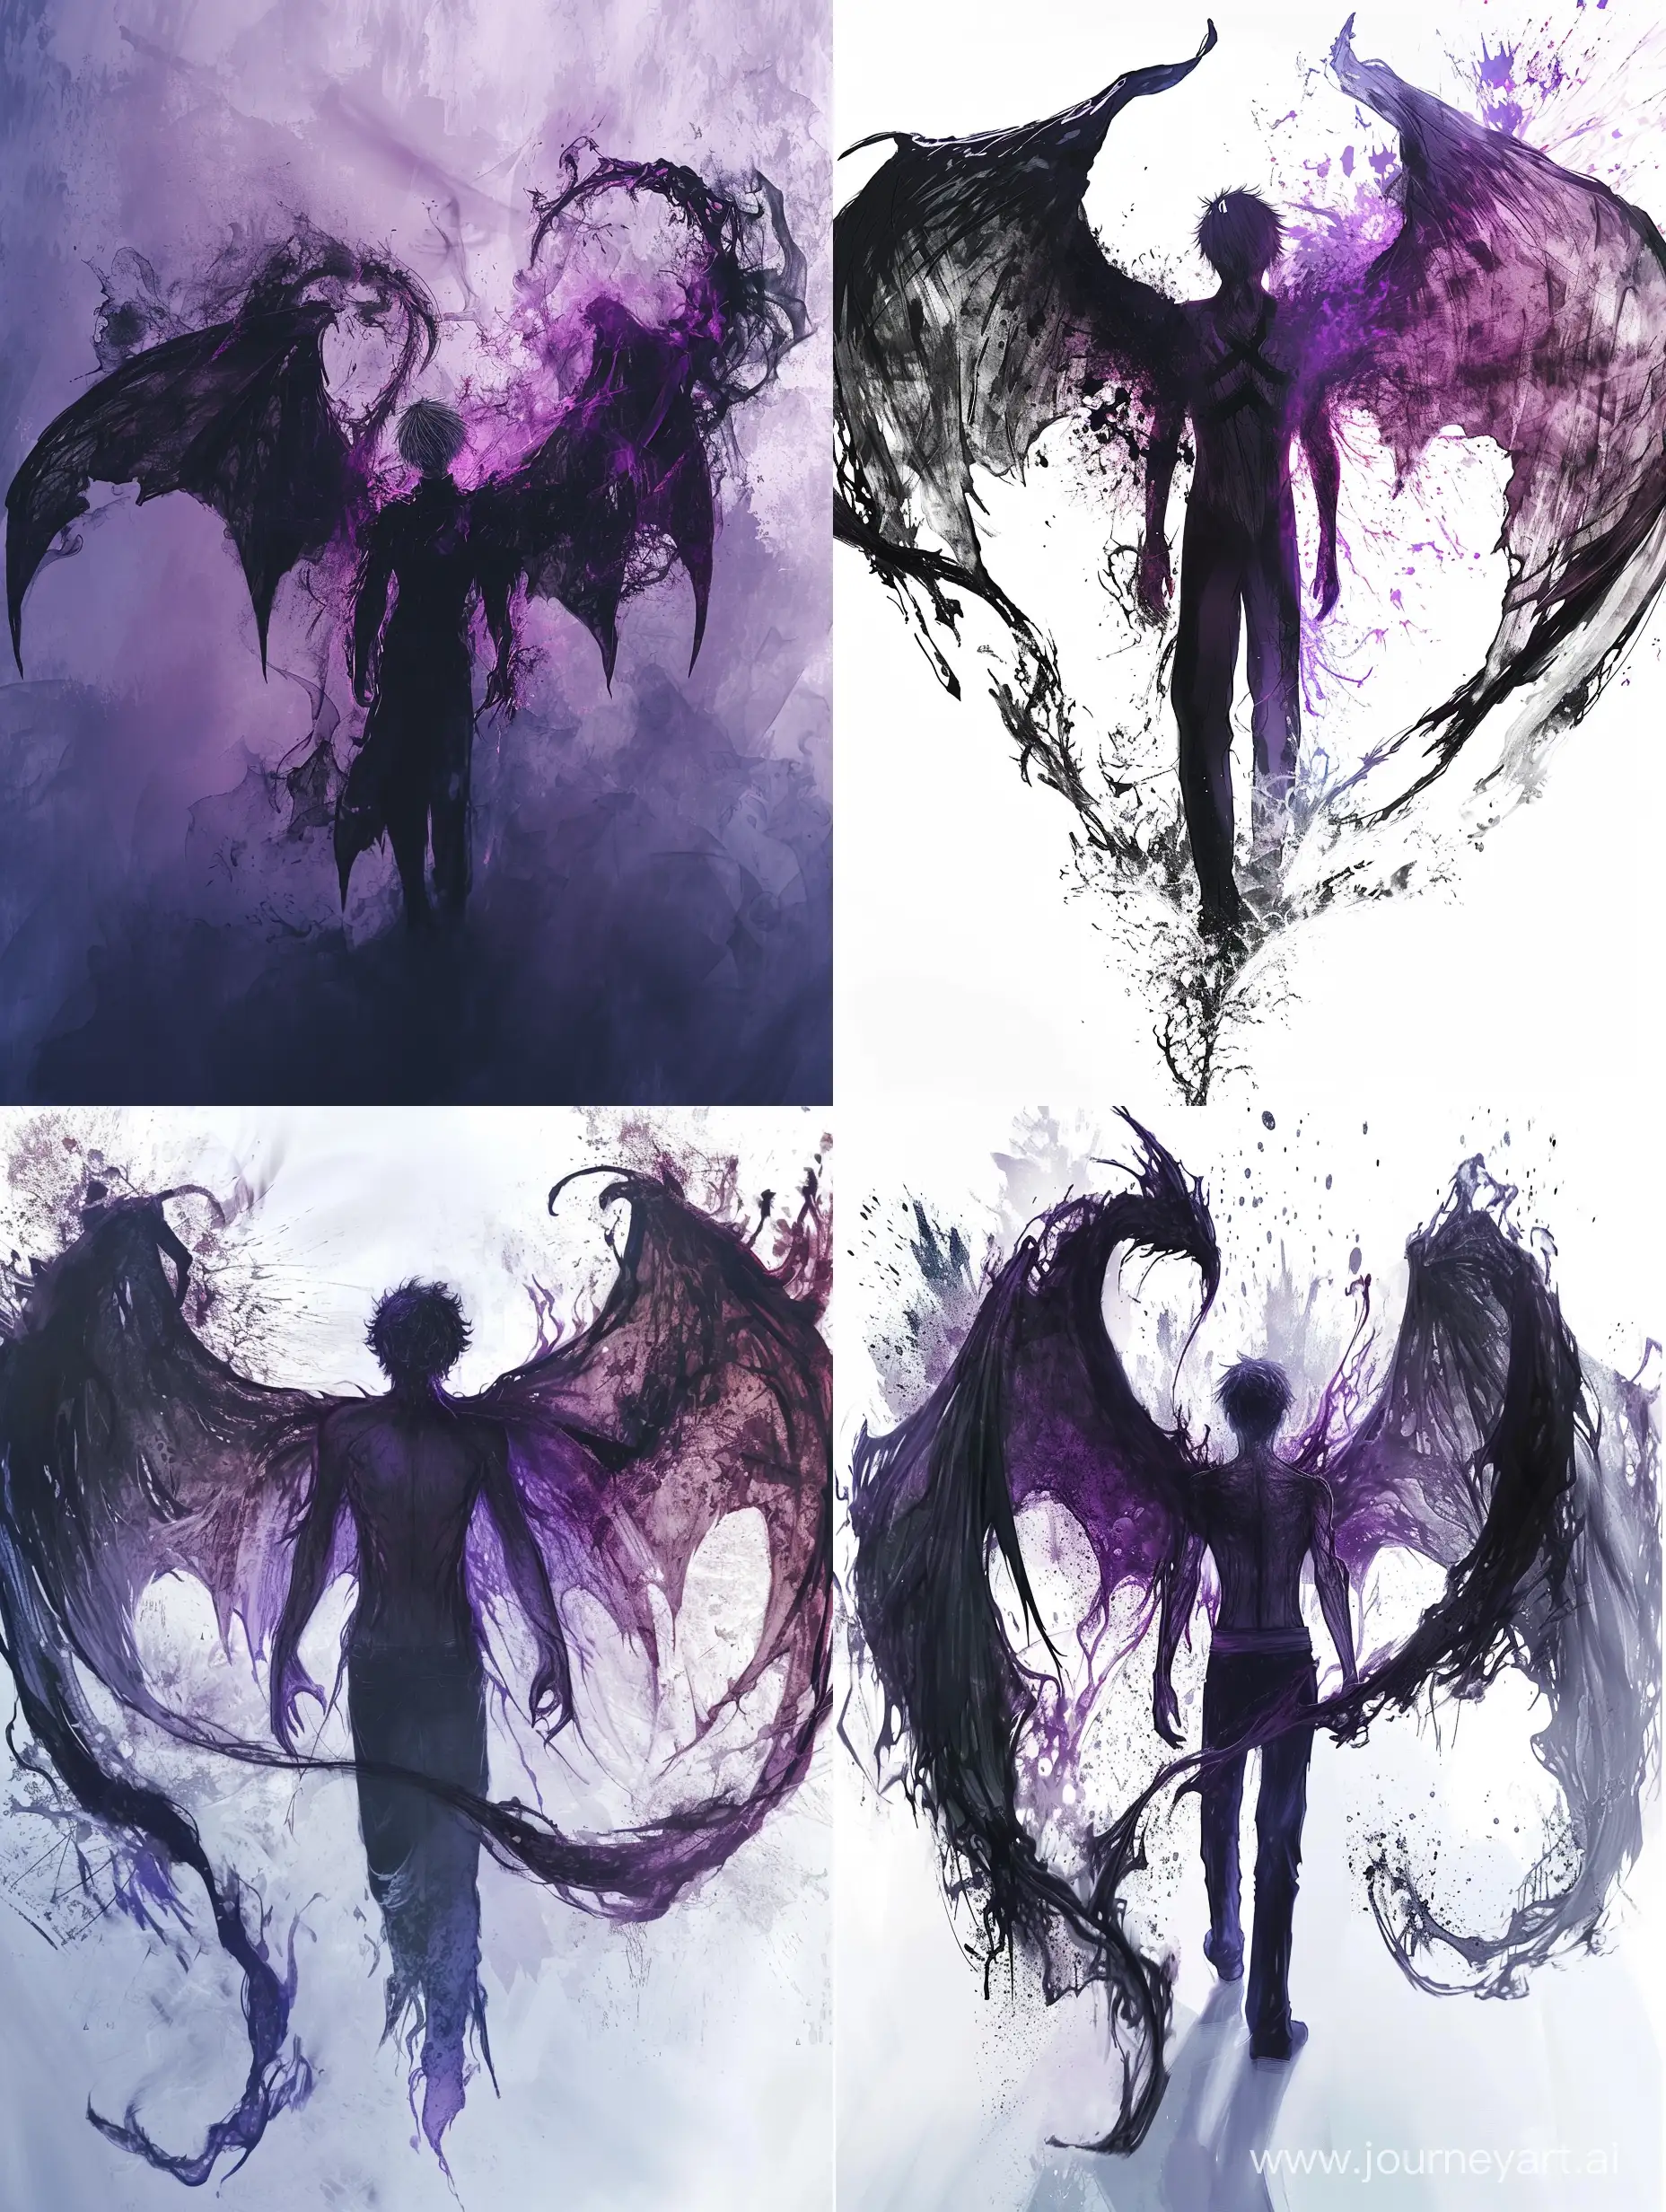 мужчина с крыльями сзади темного цвета с фиолетовым отливом(крылья похожи на кагуне из аниме токийский гуль) мужчина также состоит из теневой энергии